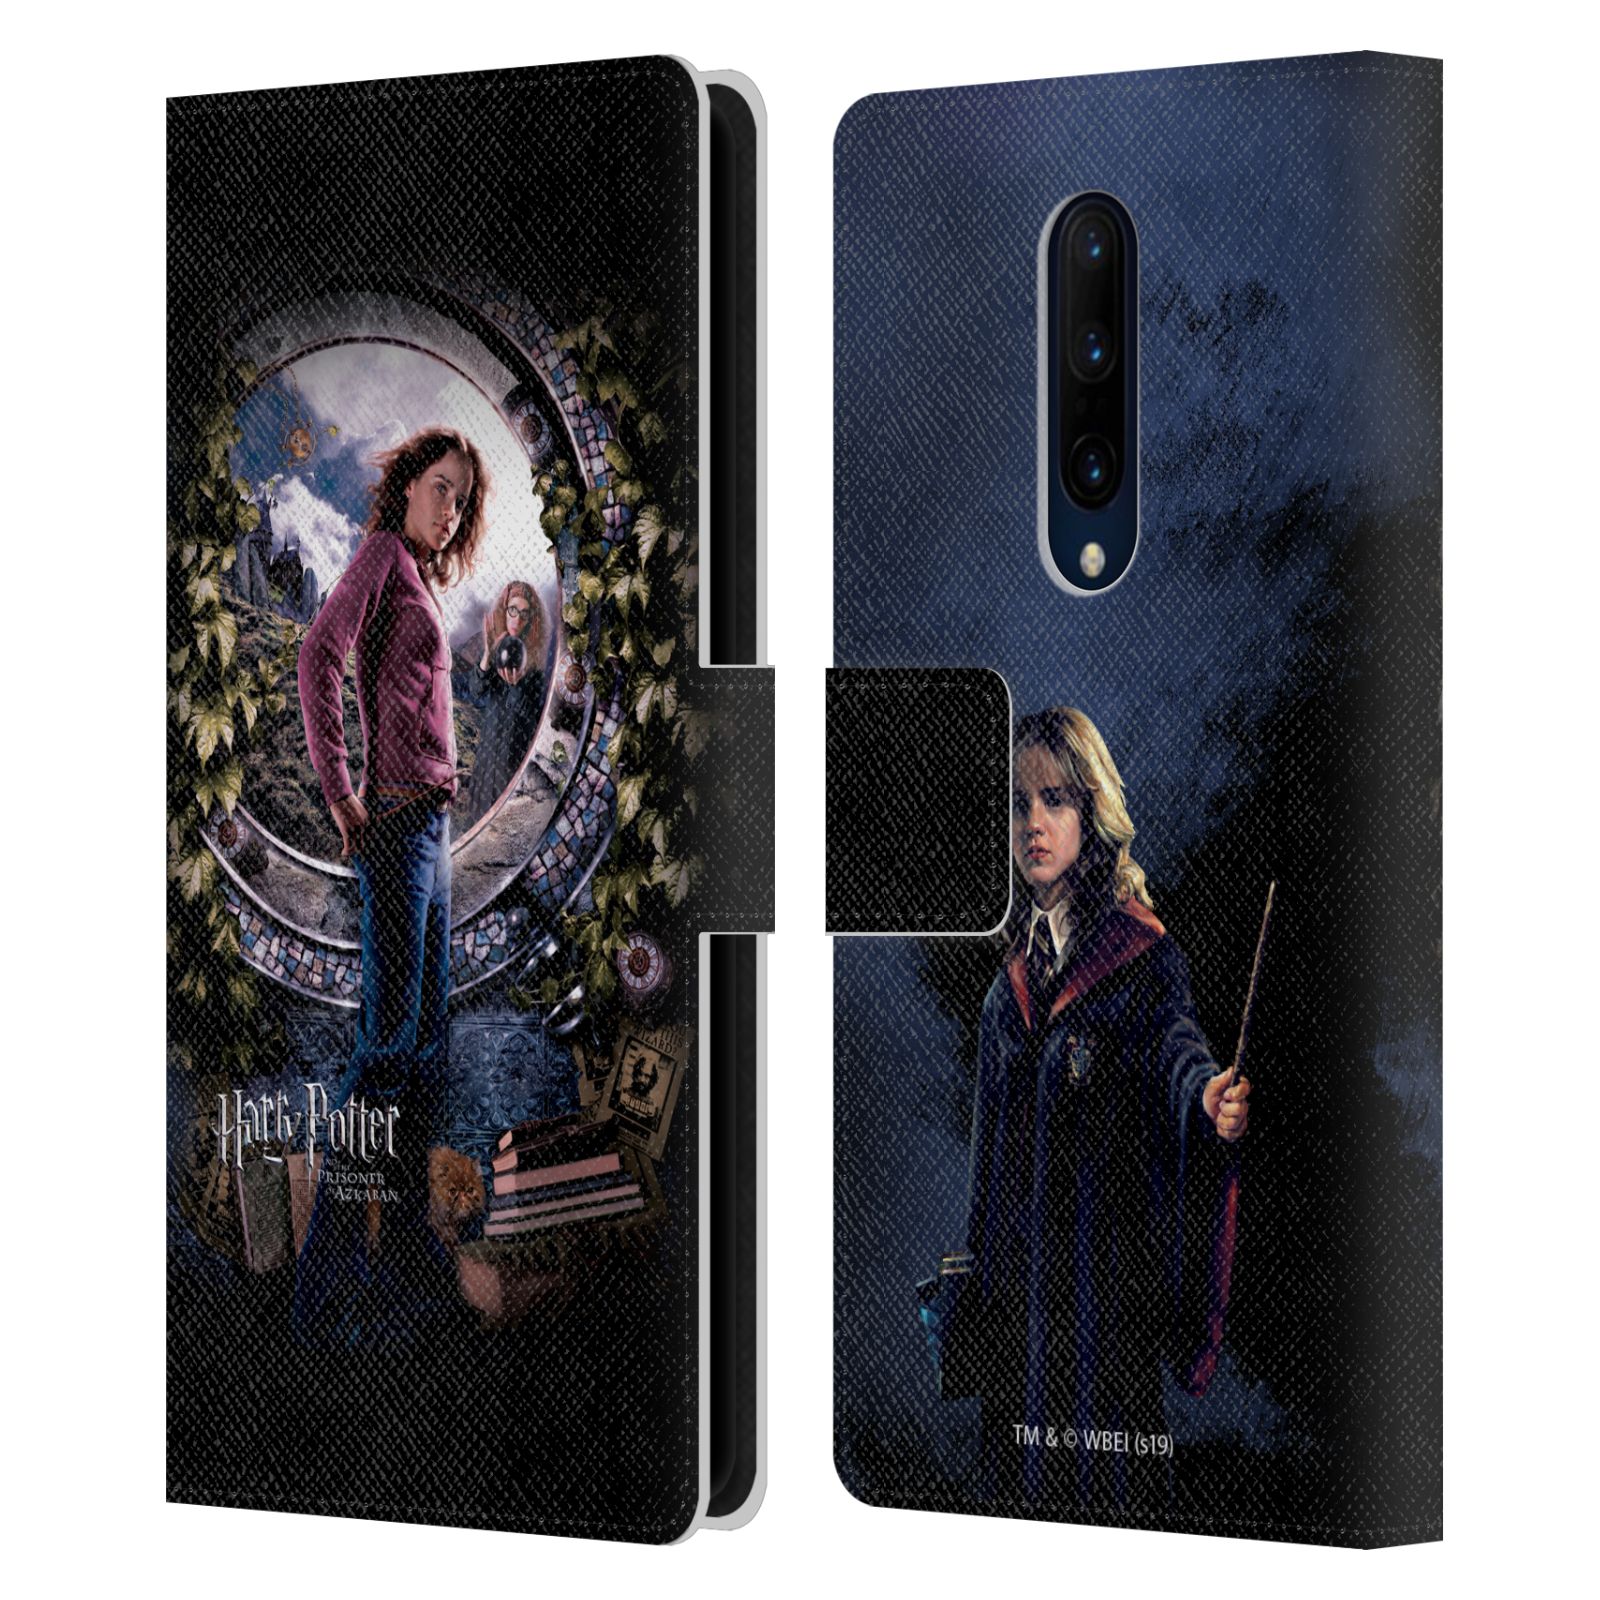 Pouzdro na mobil OnePlus 7 PRO  - HEAD CASE - Harry Potter - Vězeň z Azkabanu - Hermiona